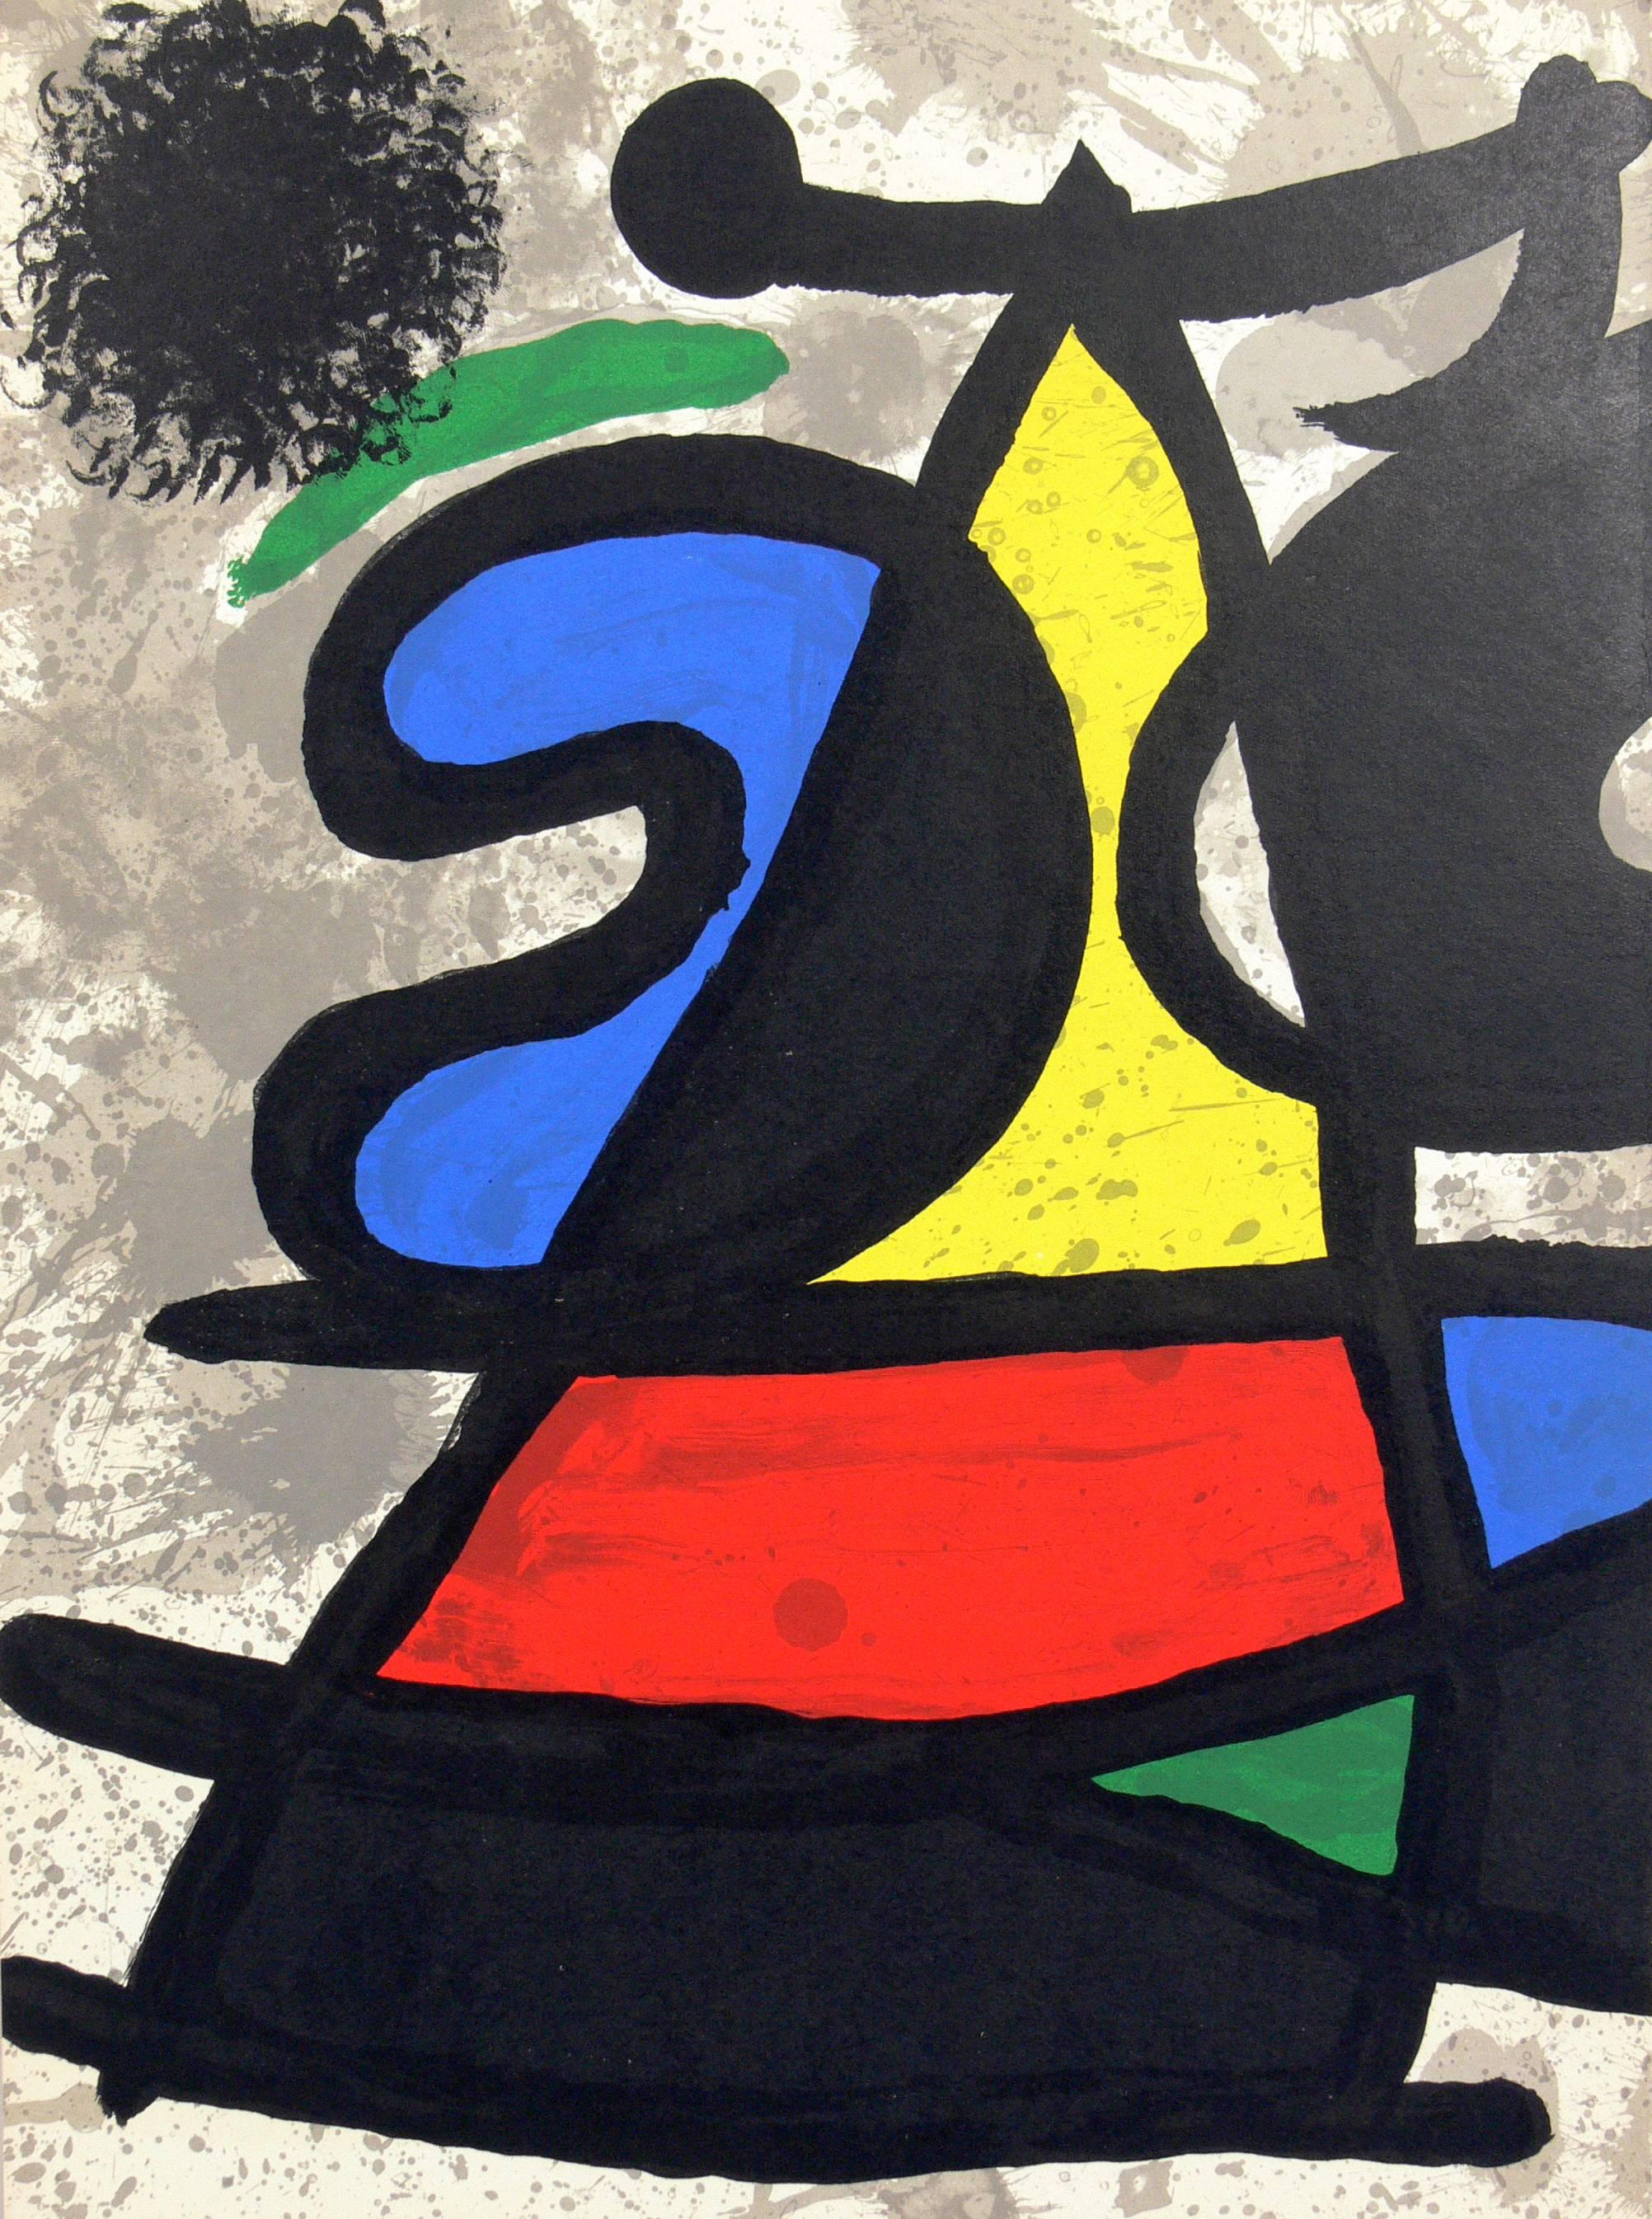 Auswahl von Farblithografien von Joan Miro, Frankreich, ca. 1960er Jahre. Nur die Lithographie in der Mitte ist verfügbar. Die Lithografien rechts und links wurden verkauft. Wir haben eine Gruppe dieser Farblithografien aus dem Nachlass eines